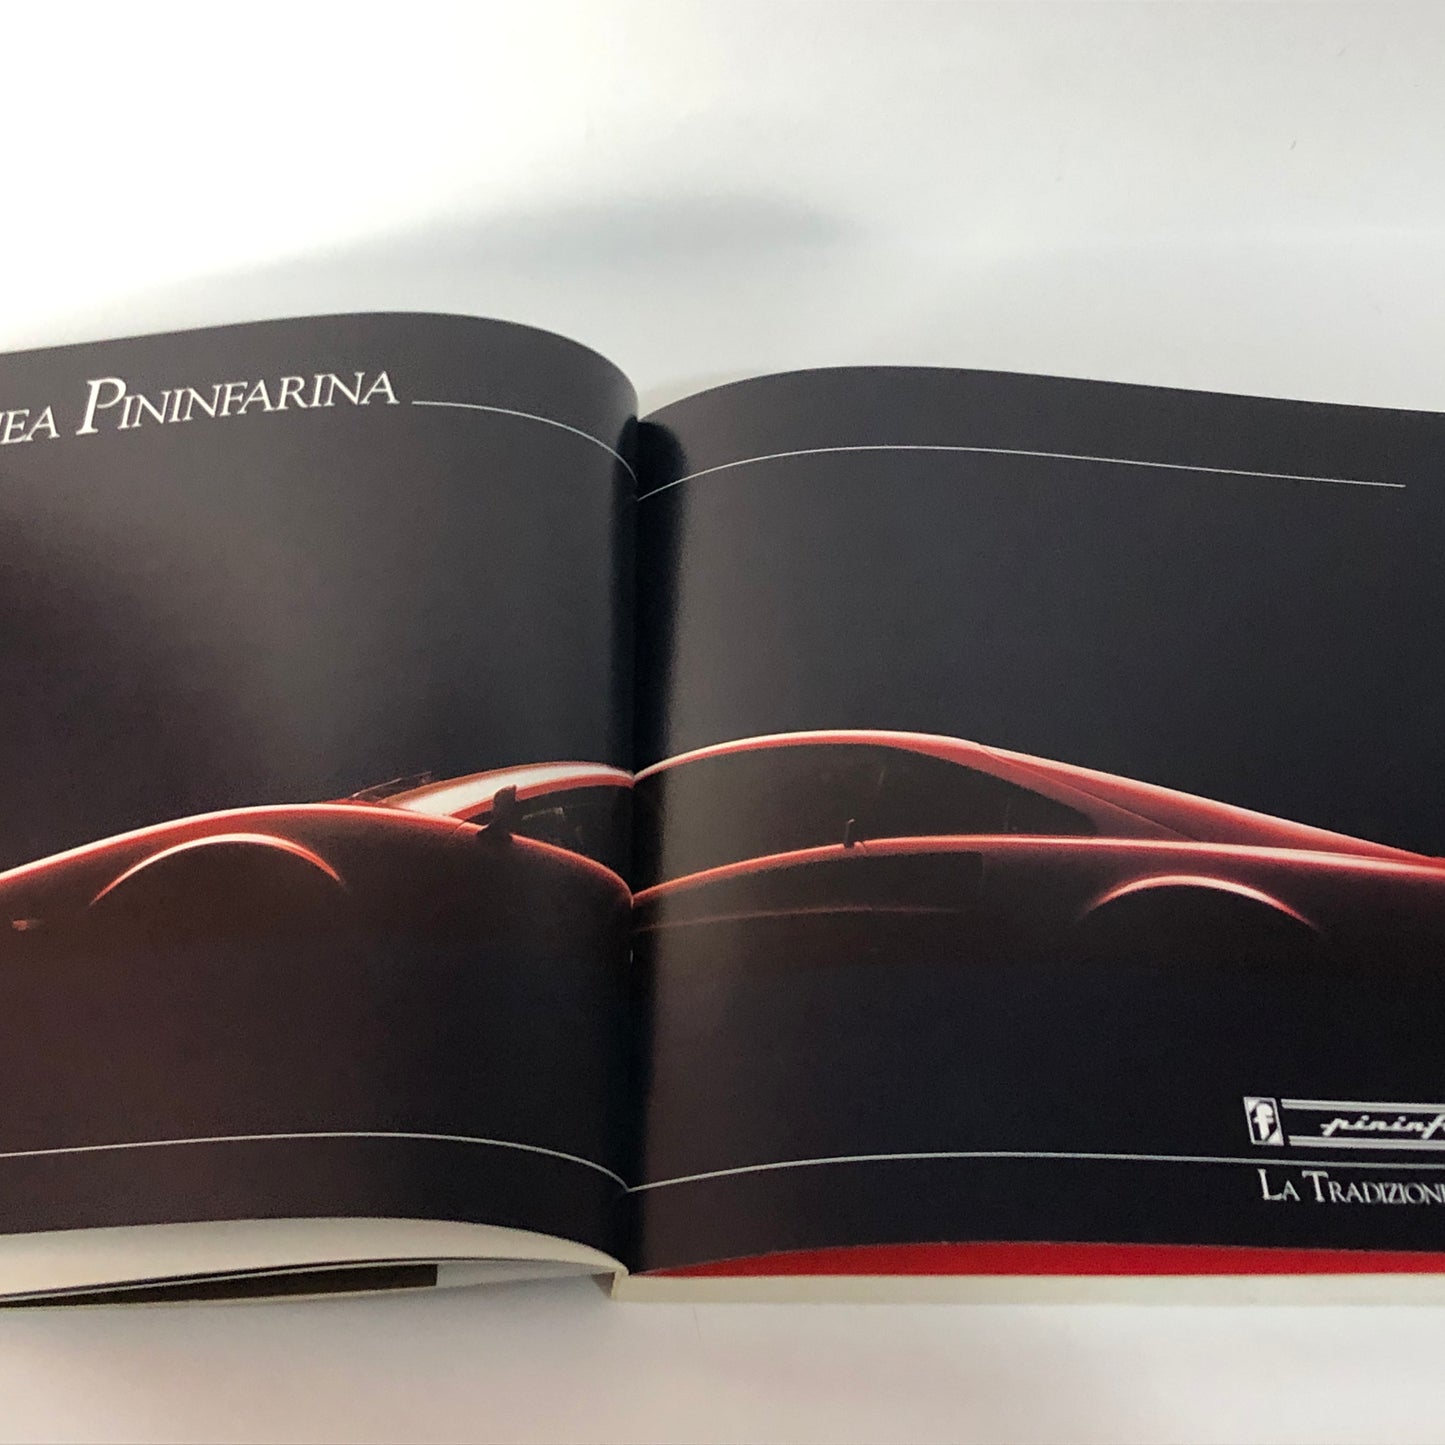 Automobilia, Books Le Grandi Automobili - The Great Cars, quarterly magazine from the 1980s